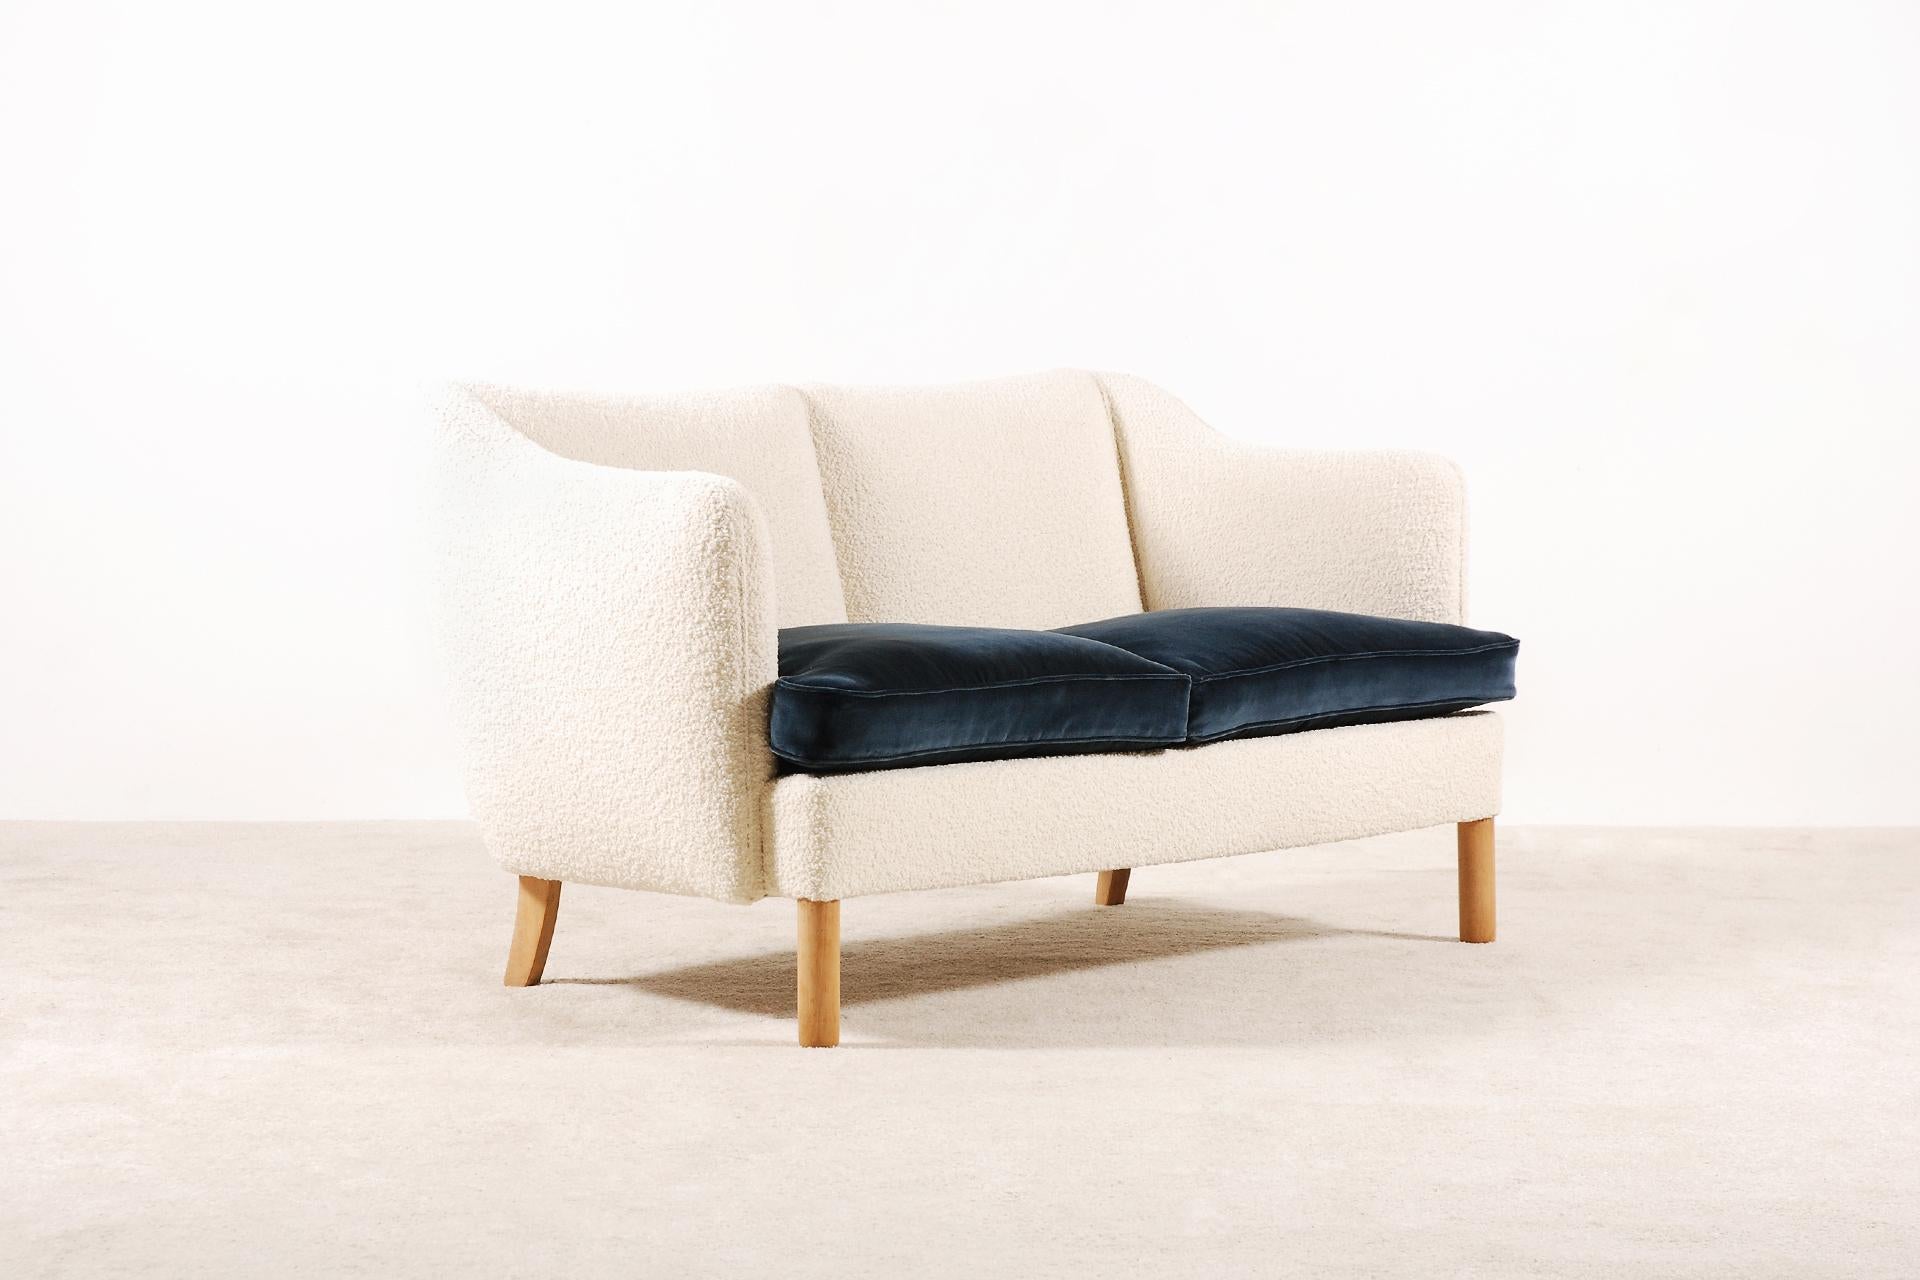 Zweisitziges Sofa:: Dänemark:: 1950:: neu gepolstert (Skandinavische Moderne)